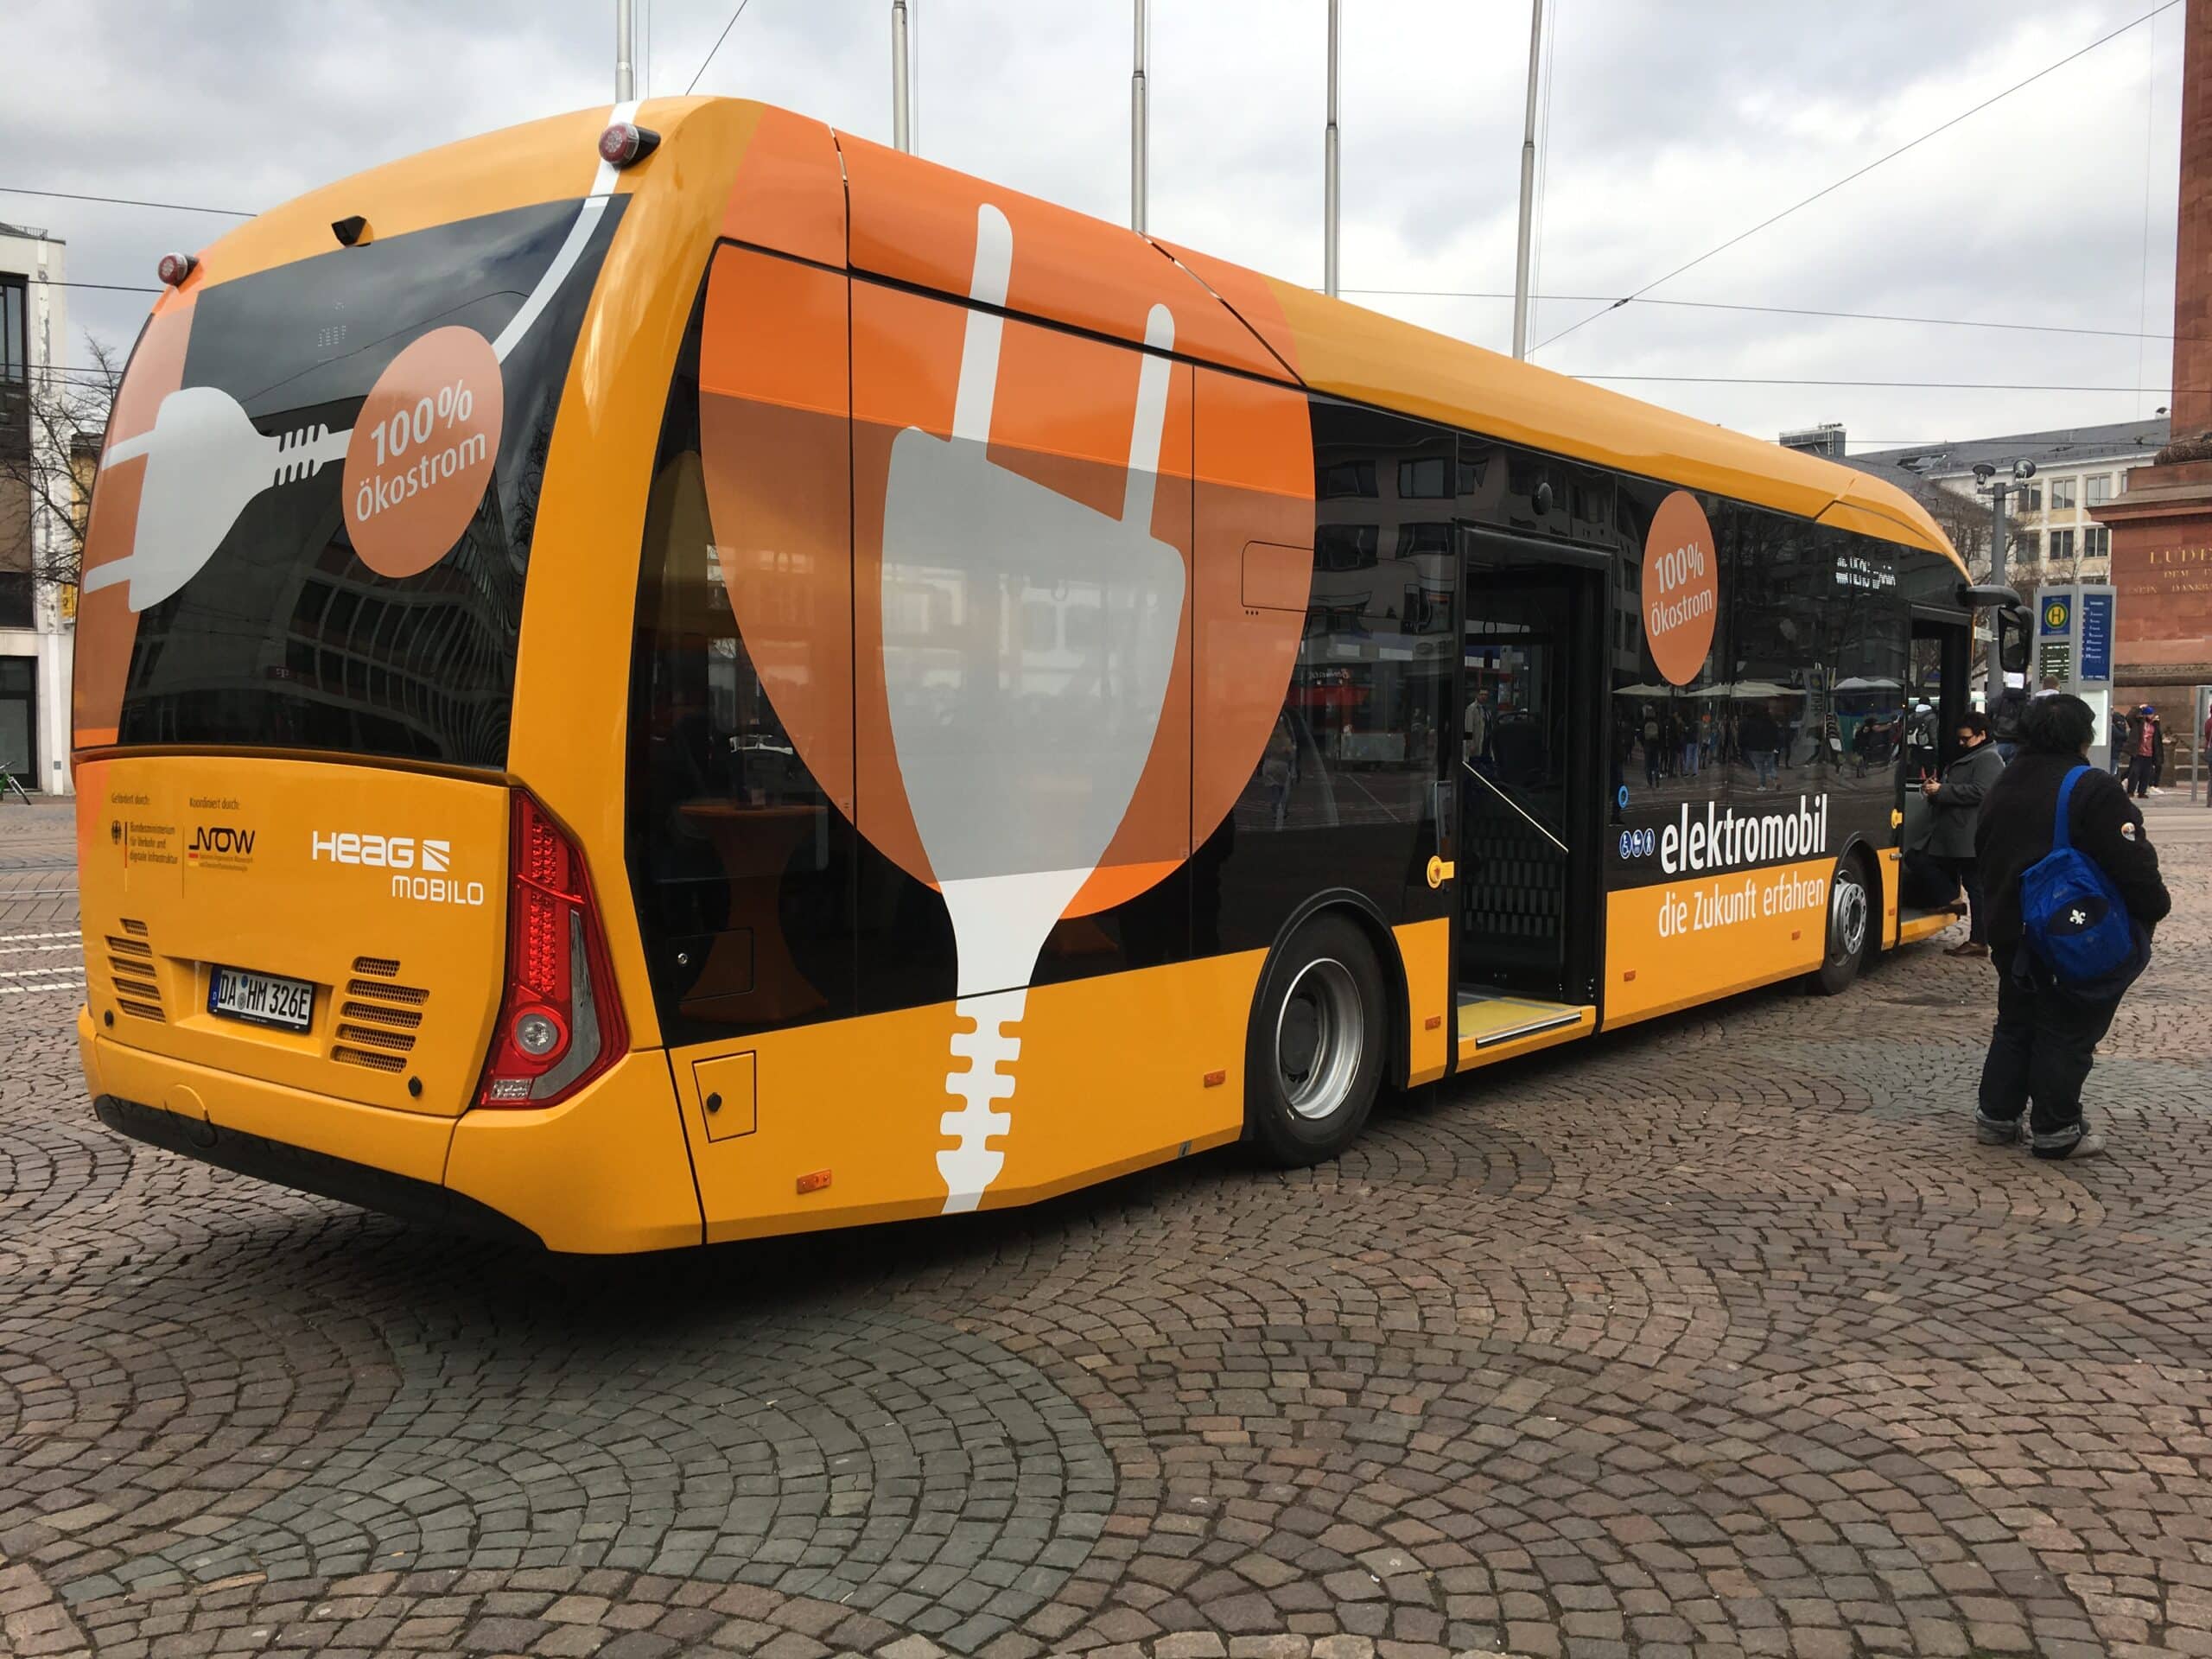 Bild zeigt einen Orange-farbigen Elektrobus des Darmstädter Verkehrsunternehmens HEAG mobilo